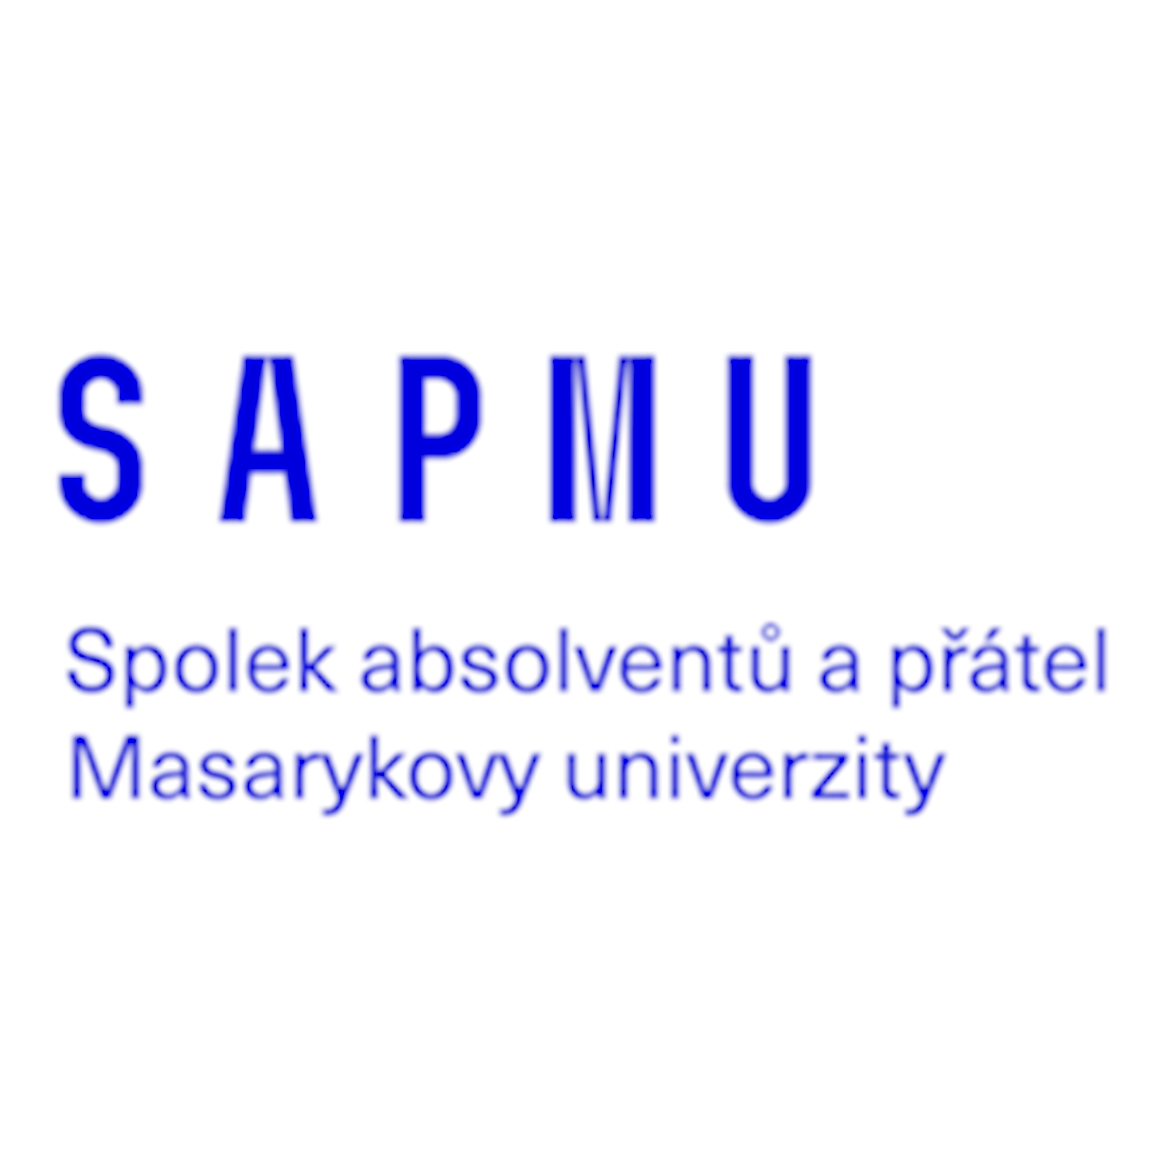 Spolek absolventů a přátel Masarykovy univerzity (SAPMU) 